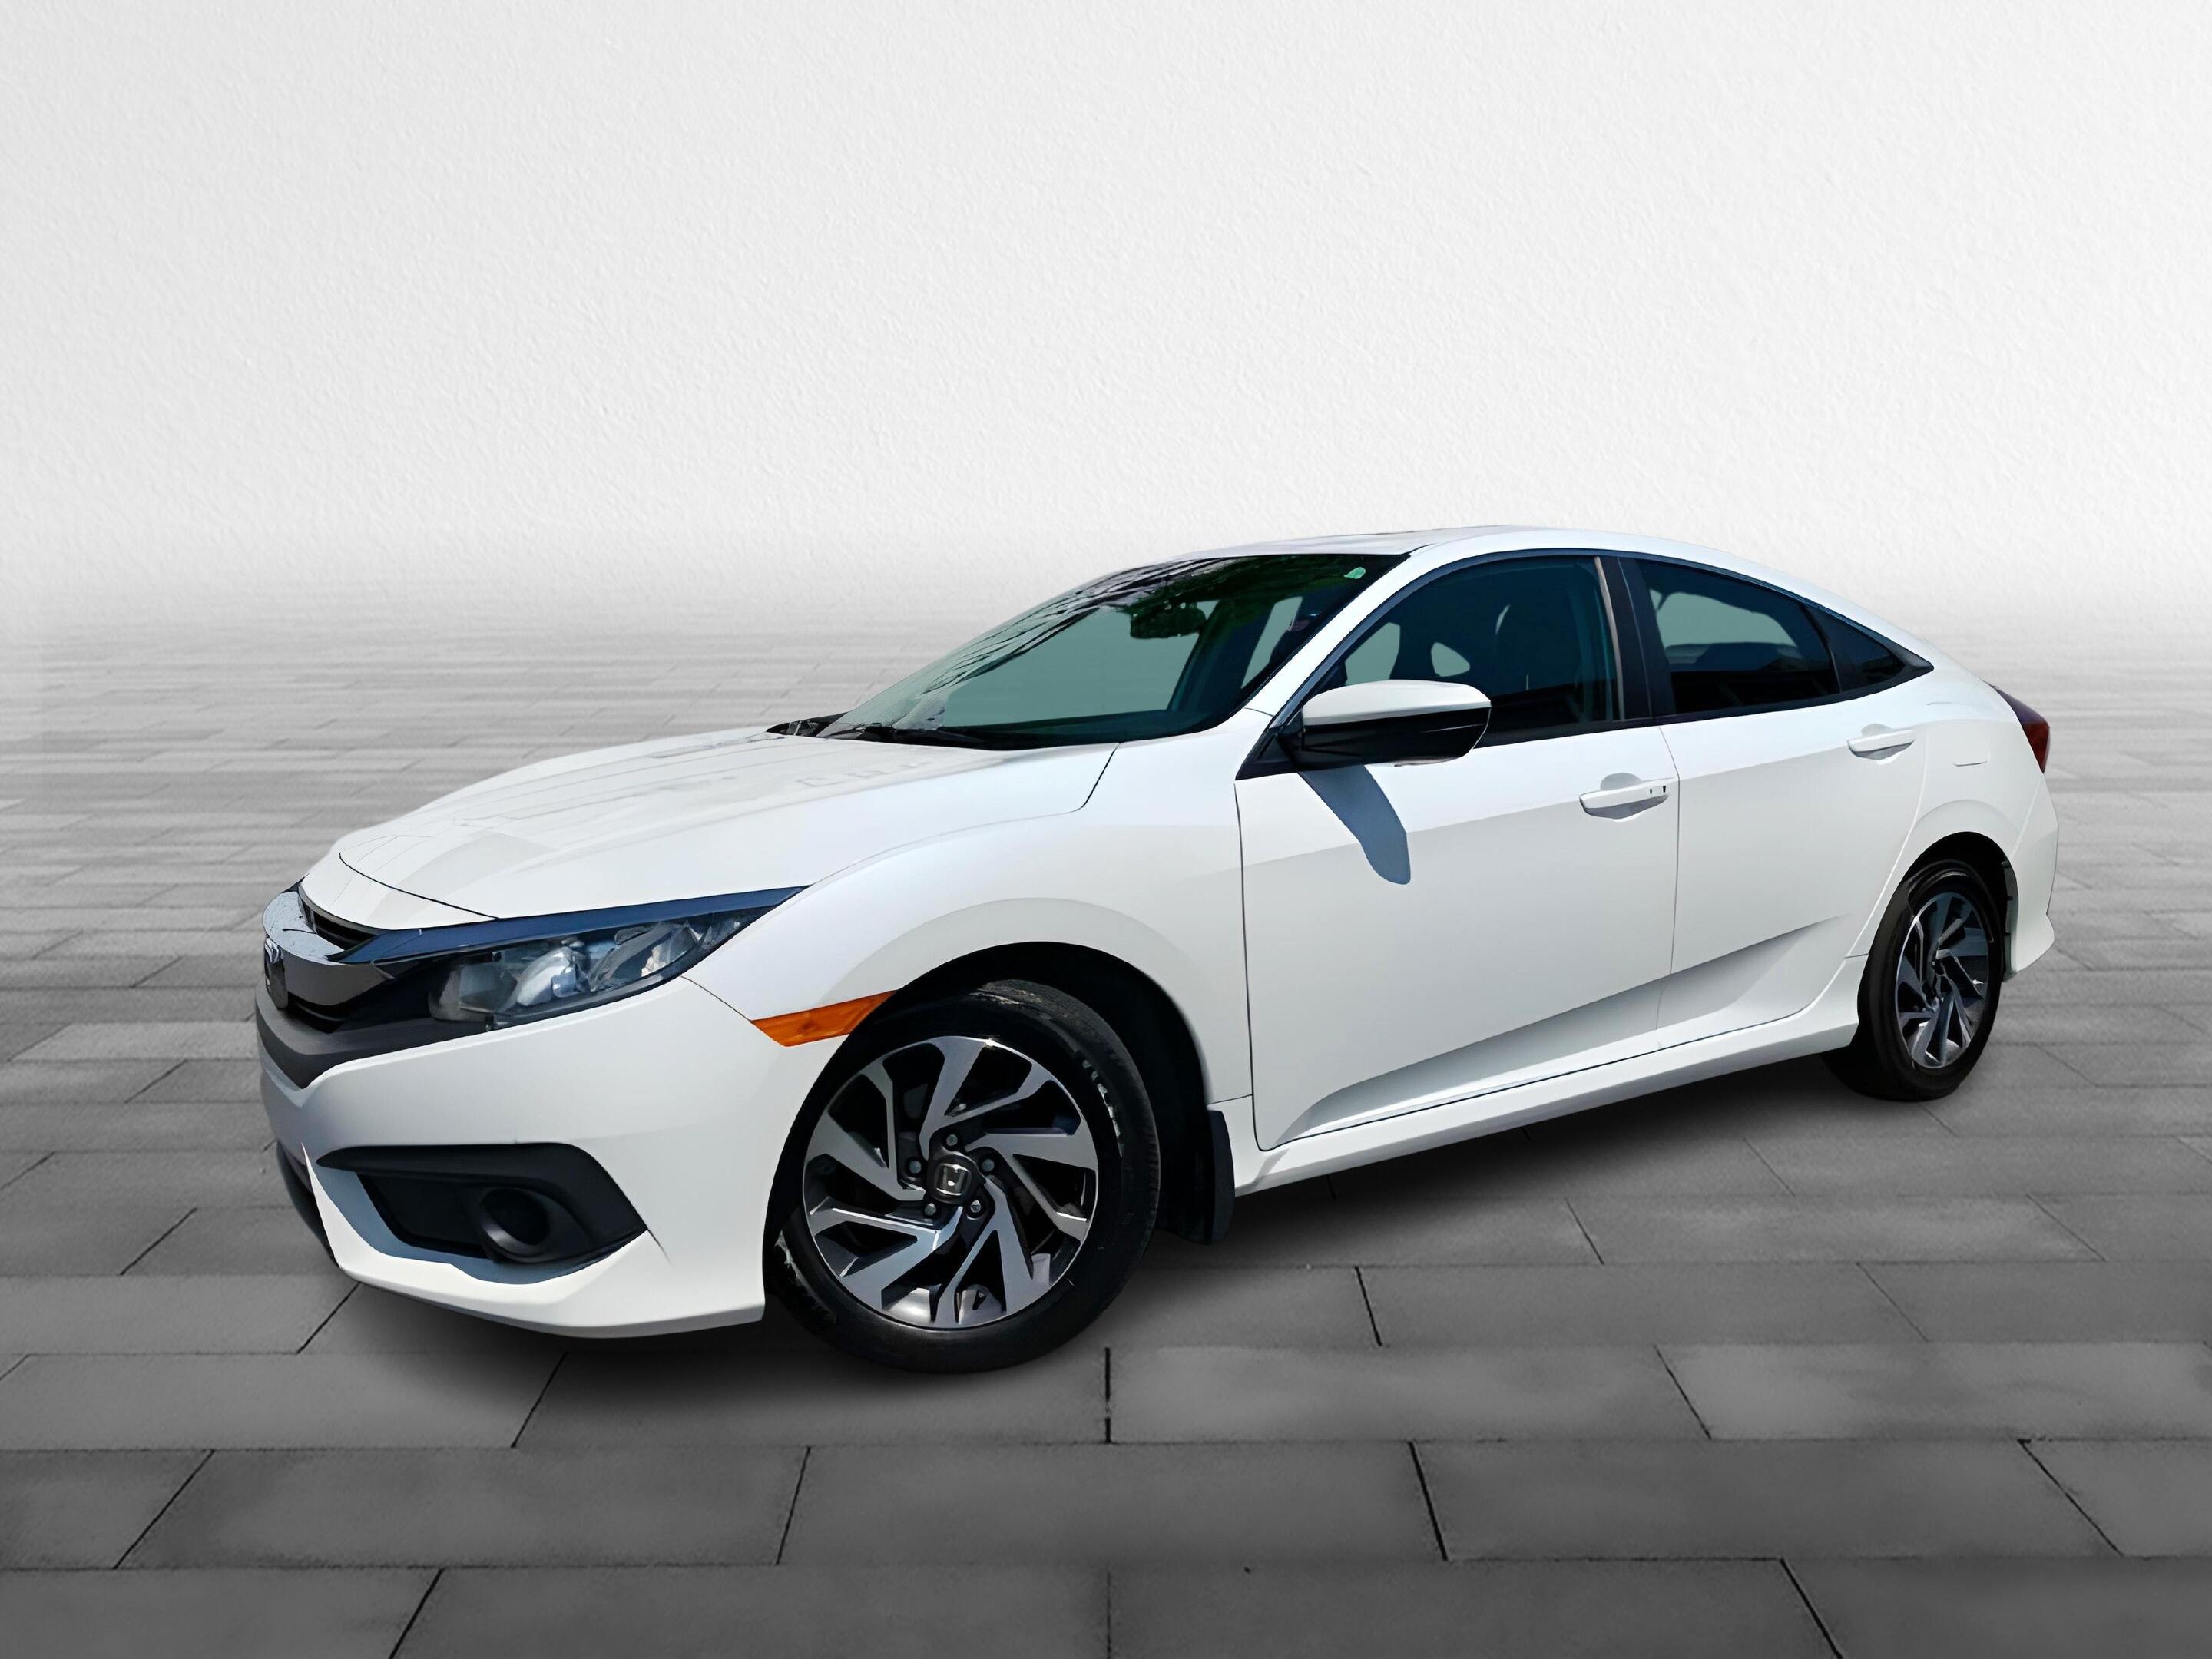 2018 Honda Civic Sedan EX  - Sunroof -  Bluetooth - $187 B/W [
  "Sunroo